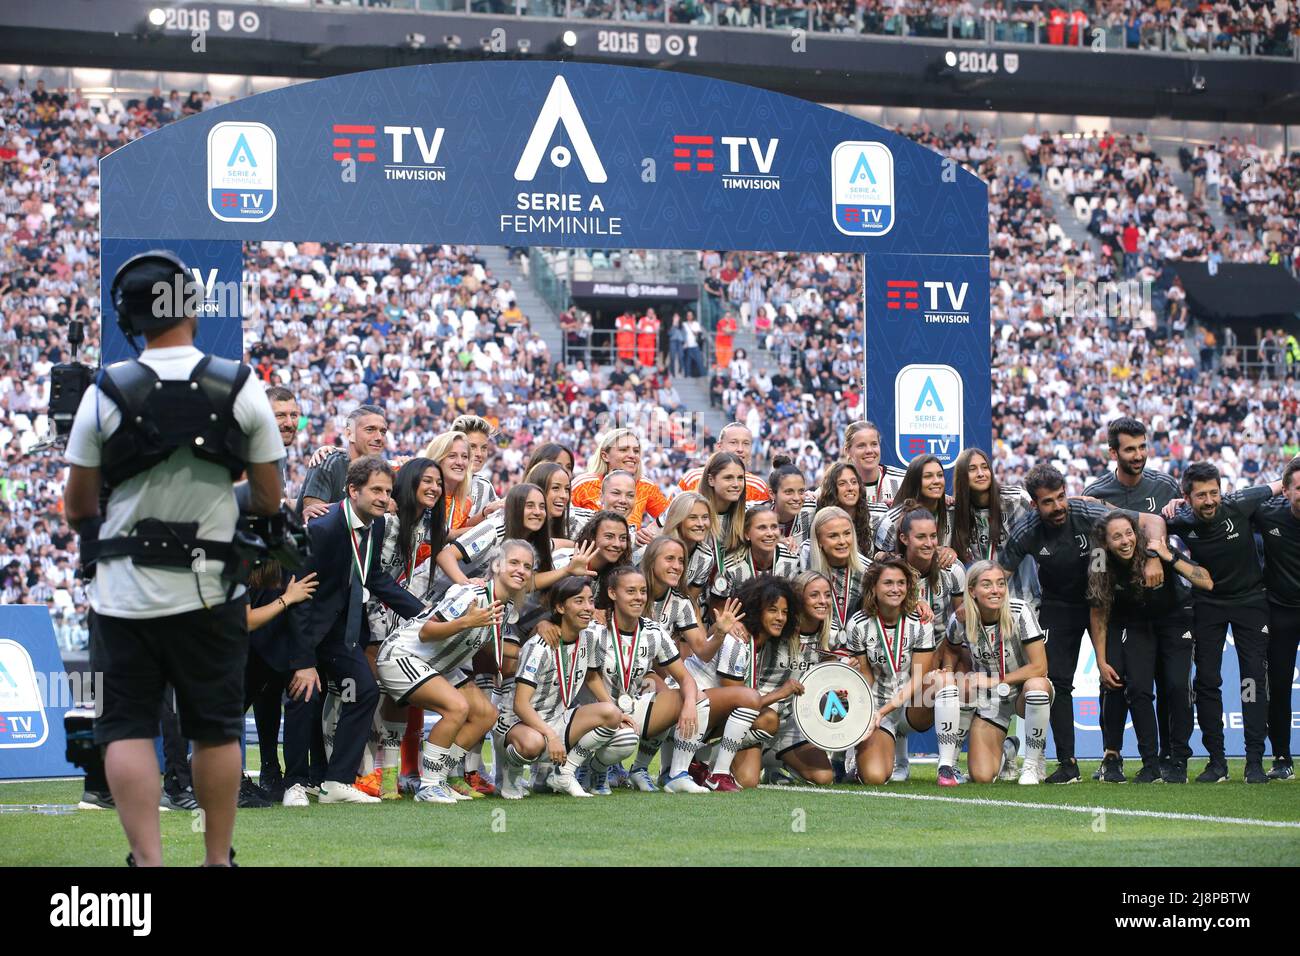 Torino, 16th maggio 2022. La squadra Juventus Women festeggia con il Women's Series A League Trophy prima di iniziare la partita nella Serie A allo stadio Allianz di Torino. Il credito d'immagine dovrebbe essere: Jonathan Moscrop / Sportimage Foto Stock